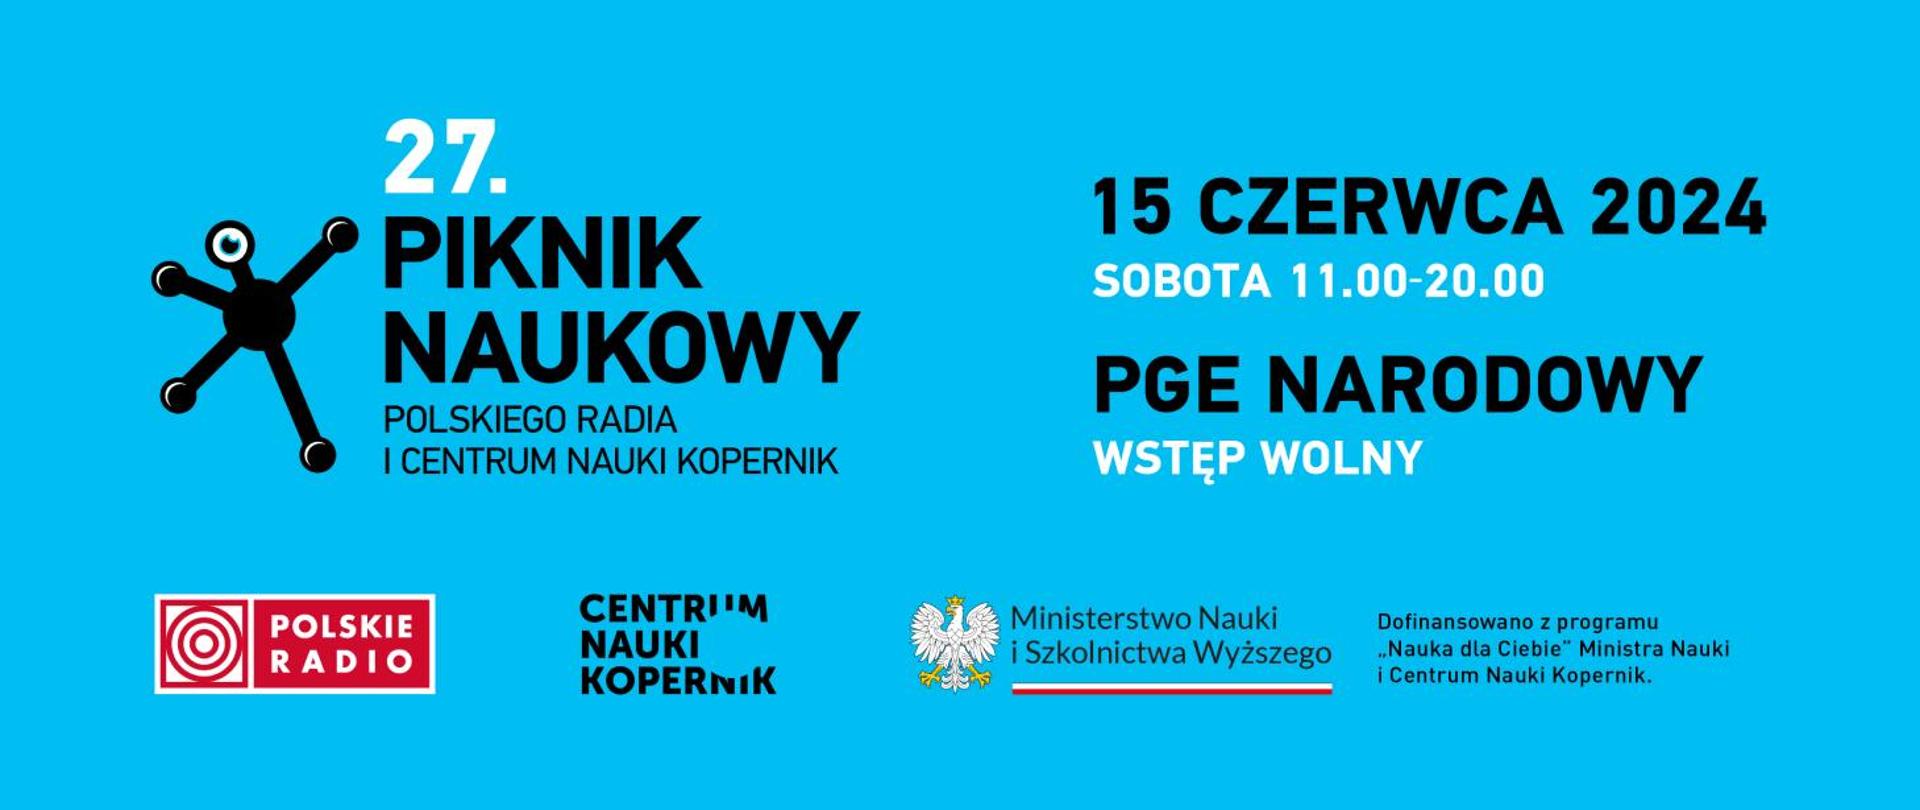 Zaproszenie na Piknik Naukowy w Warszawie